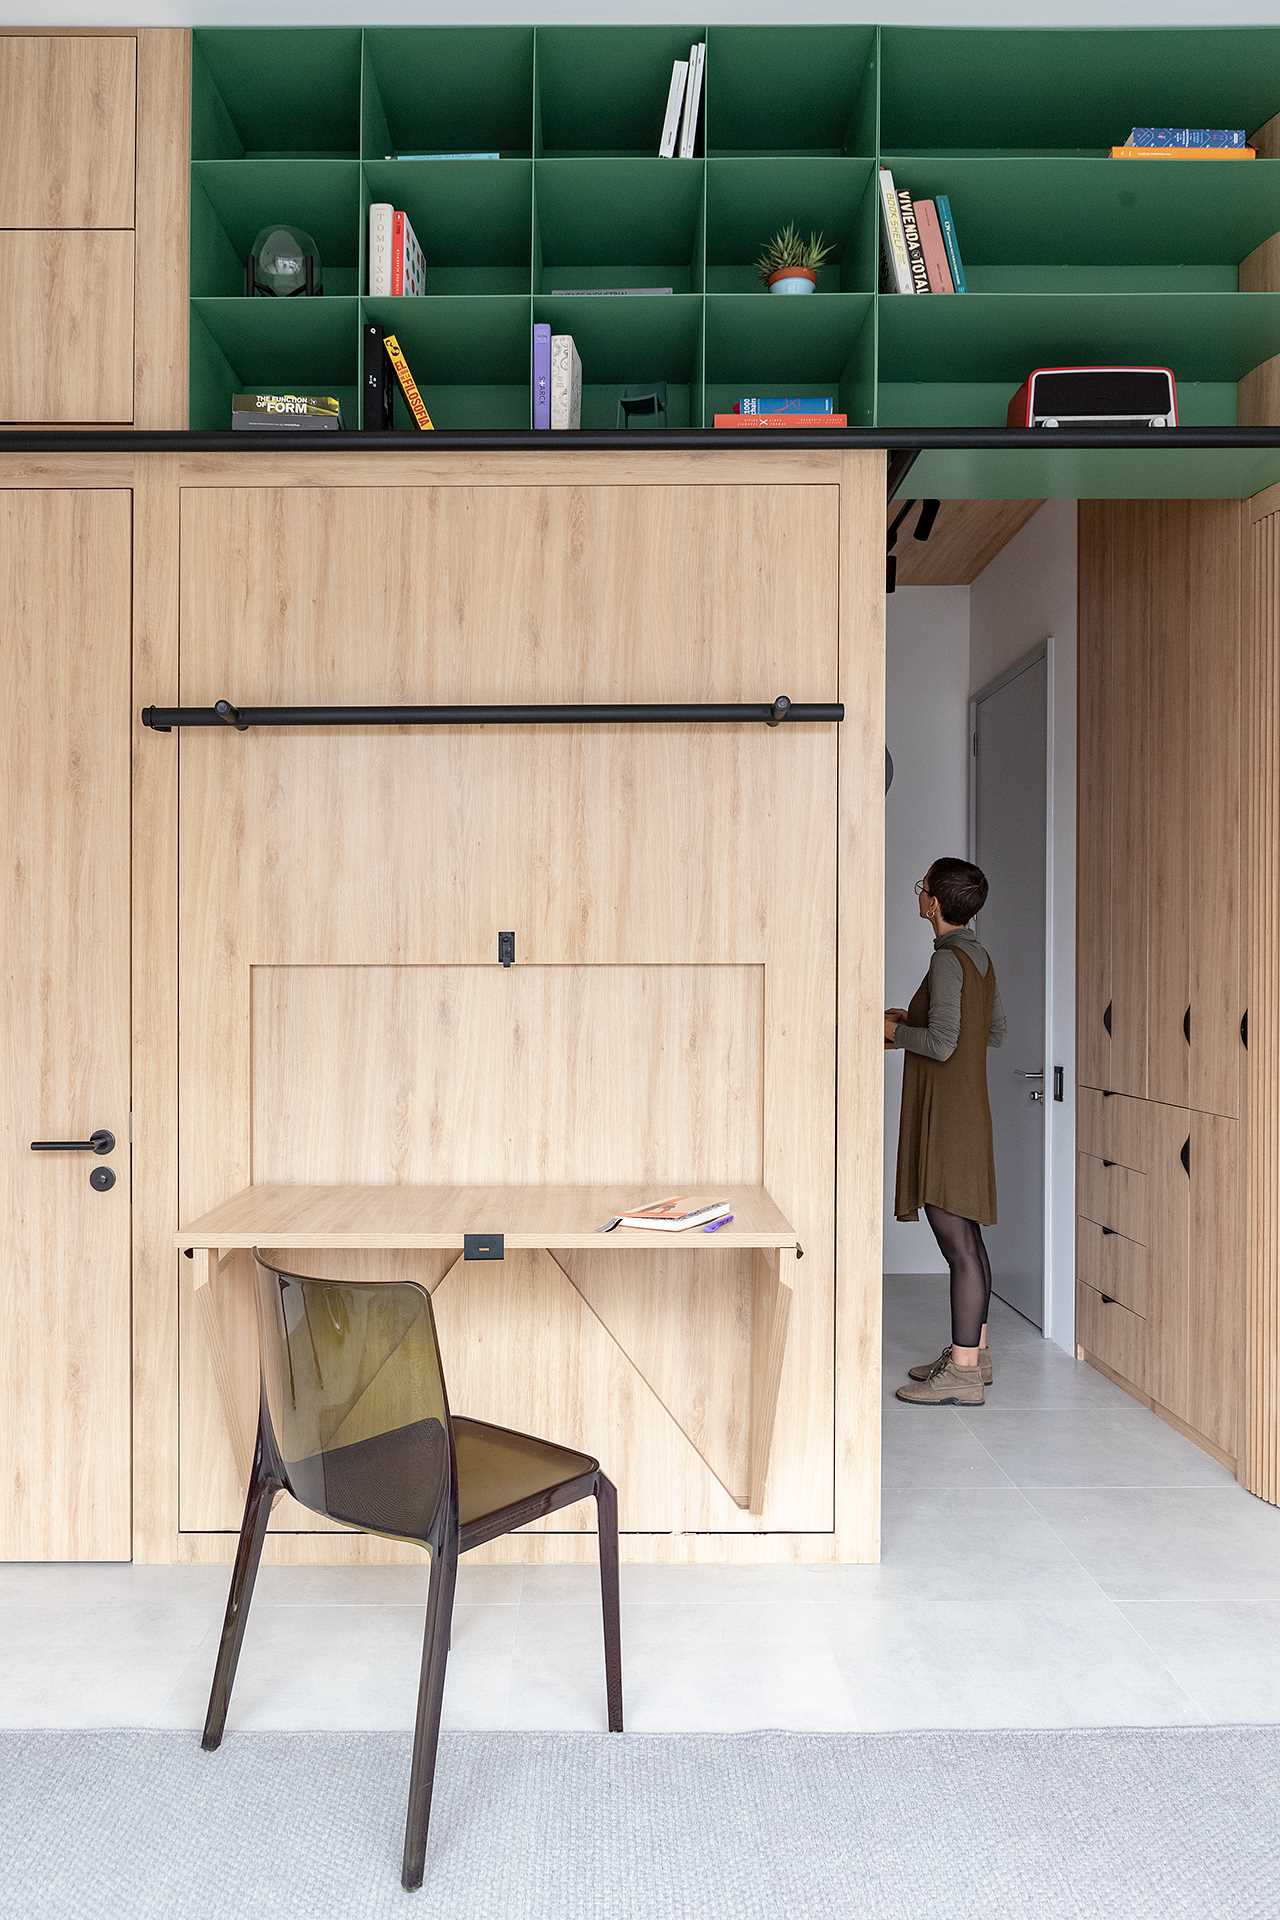 Thiết kế tủ đồ giúp tận dụng tối đa không gian trong căn hộ nhỏ - Ảnh 3.